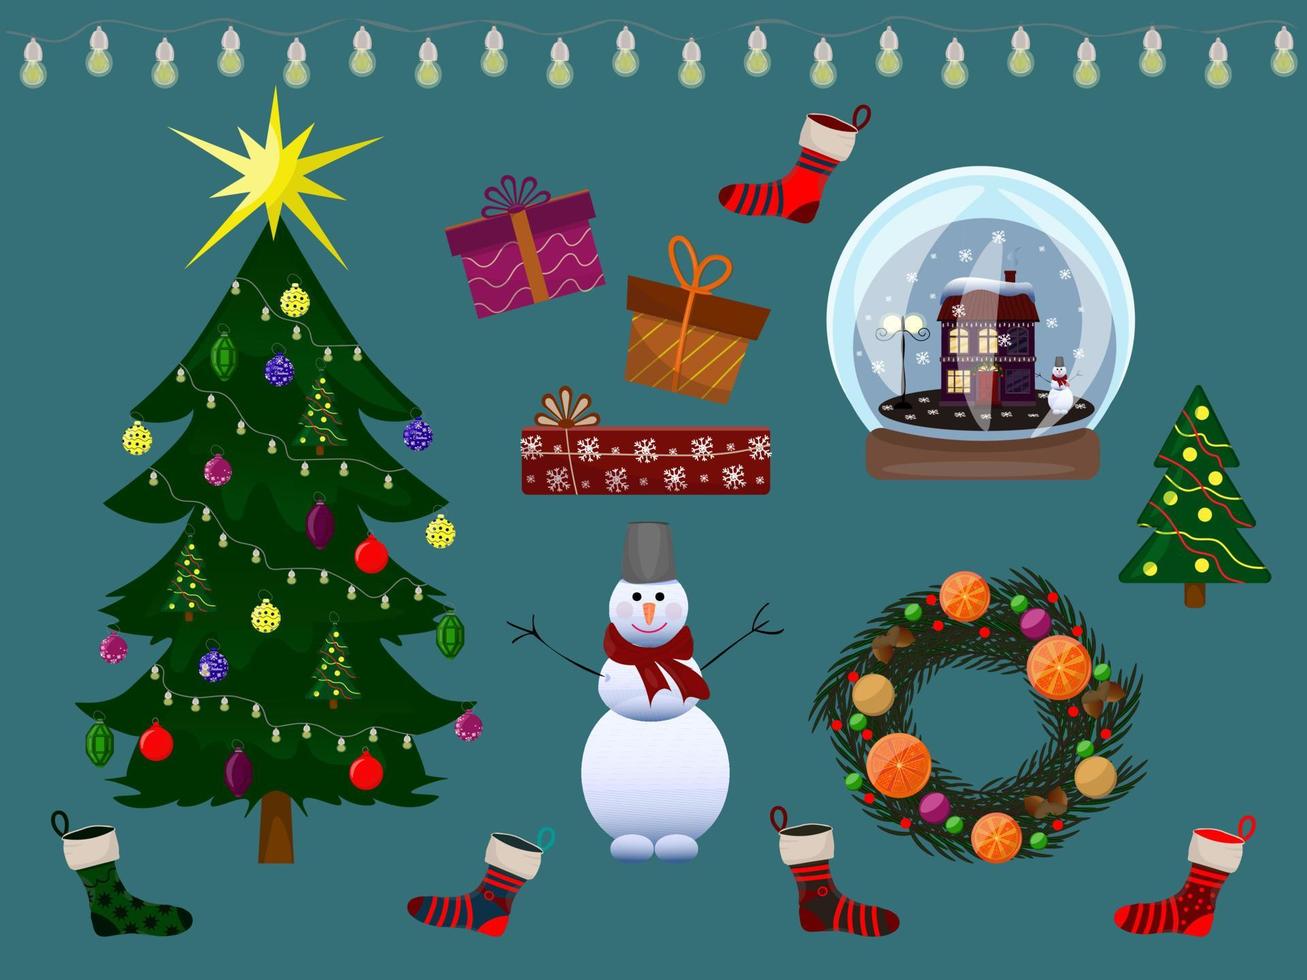 Weihnachtsdekor eingestellt. Baum, Schneemann, Laternen, Socken, Schneekugel, Kranz und Geschenke. Vektor-Illustration vektor